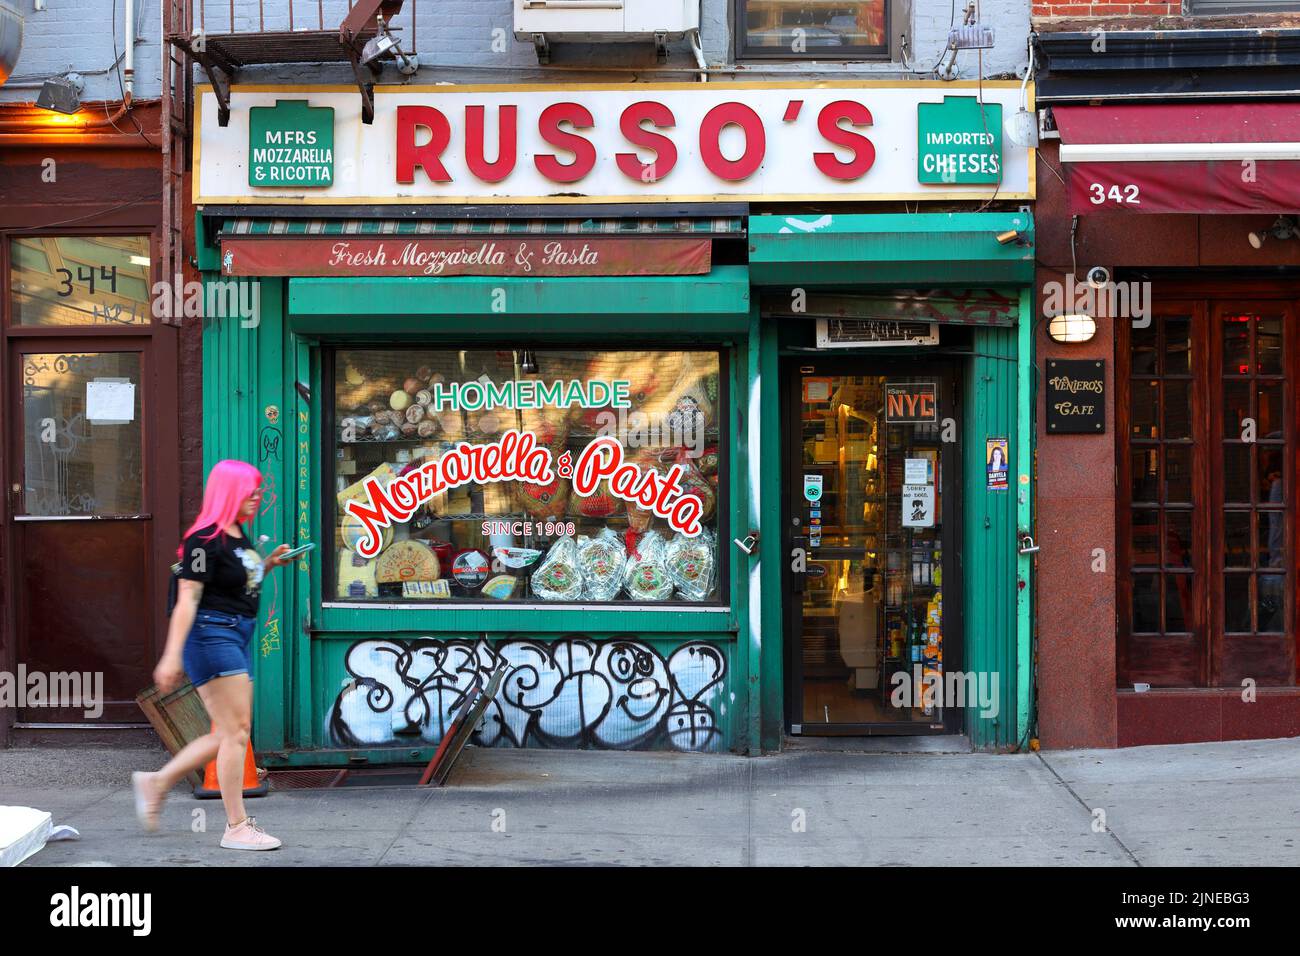 Russo's Mozzarella & Pasta, 344 E. 11th Street, New York, New York, Außenansicht eines Sandwich-Shops im East Village Viertel von Manhattan Stockfoto